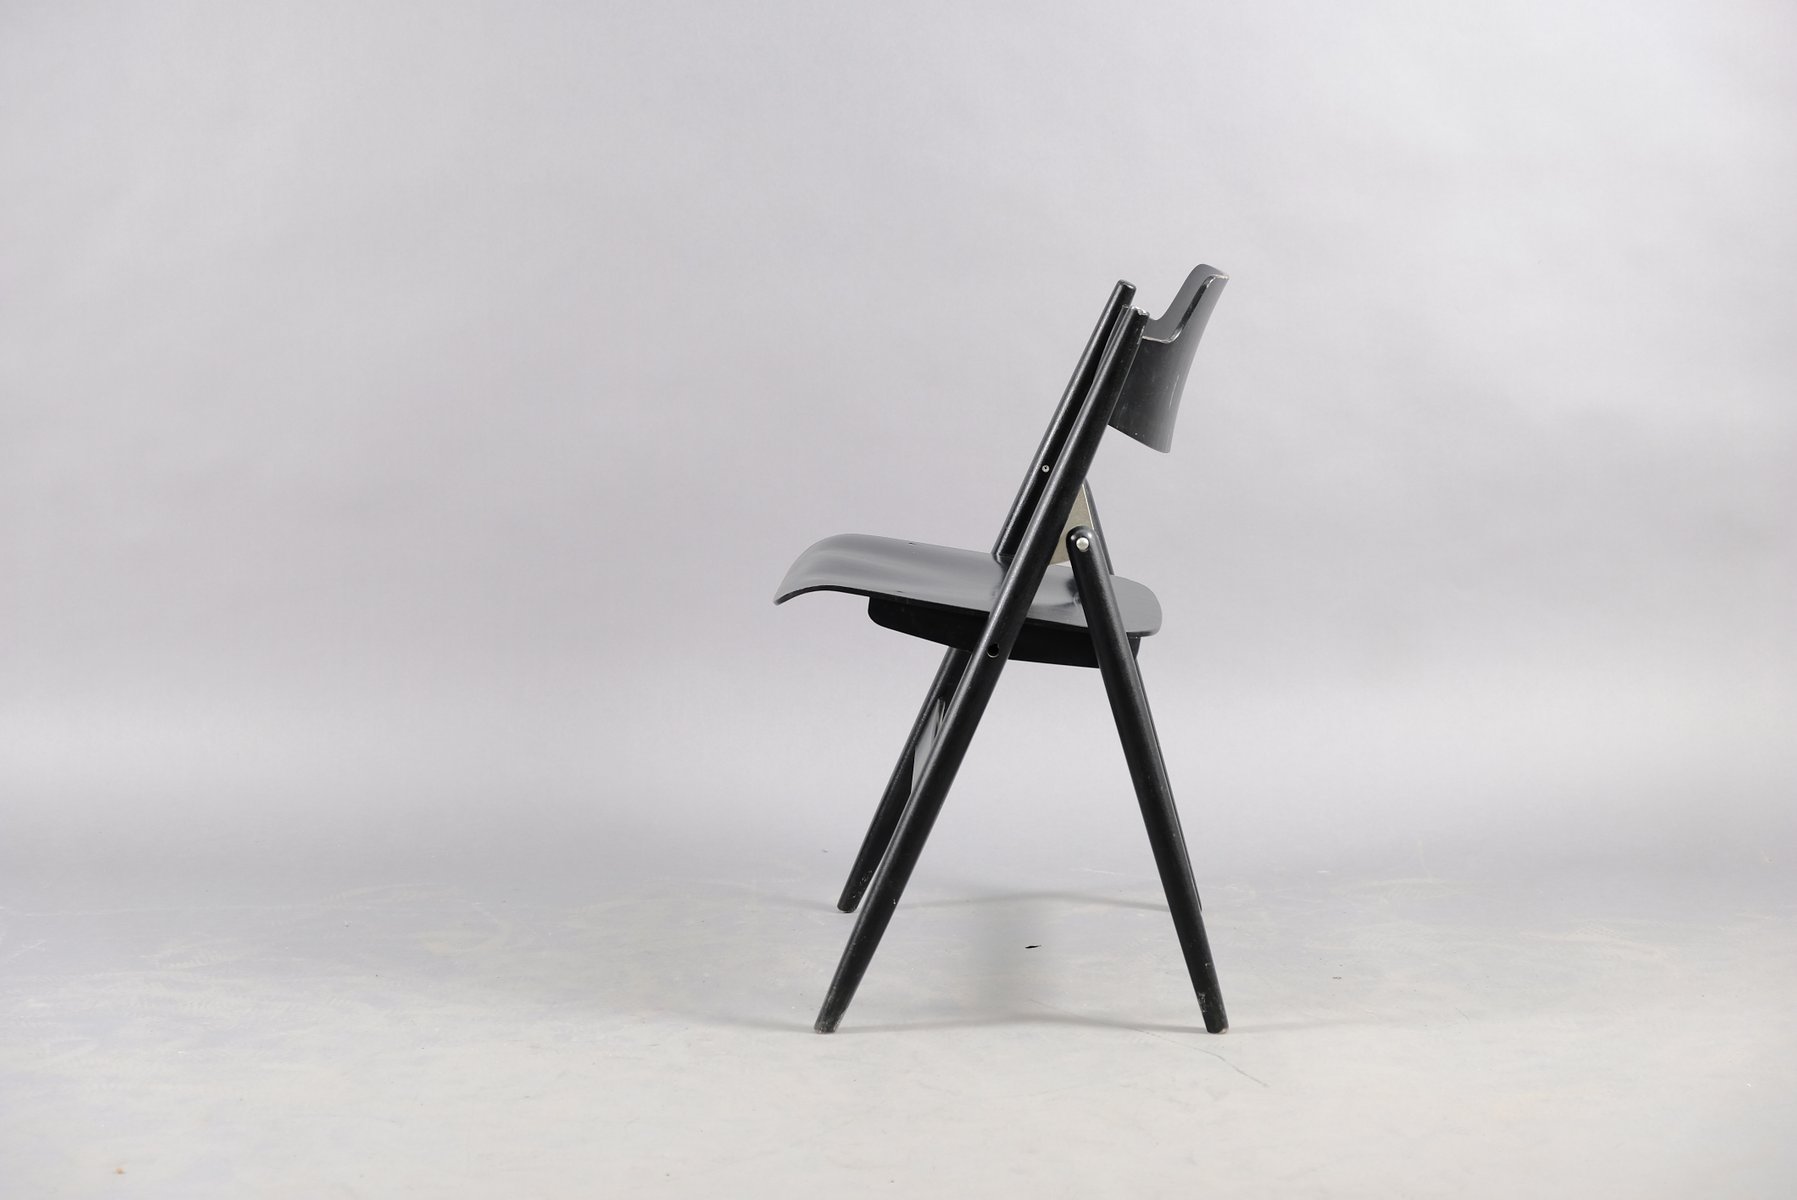 Beech Model SE18 Folding Chair by Egon Eiermann for Wilde+Spieth, 1960s